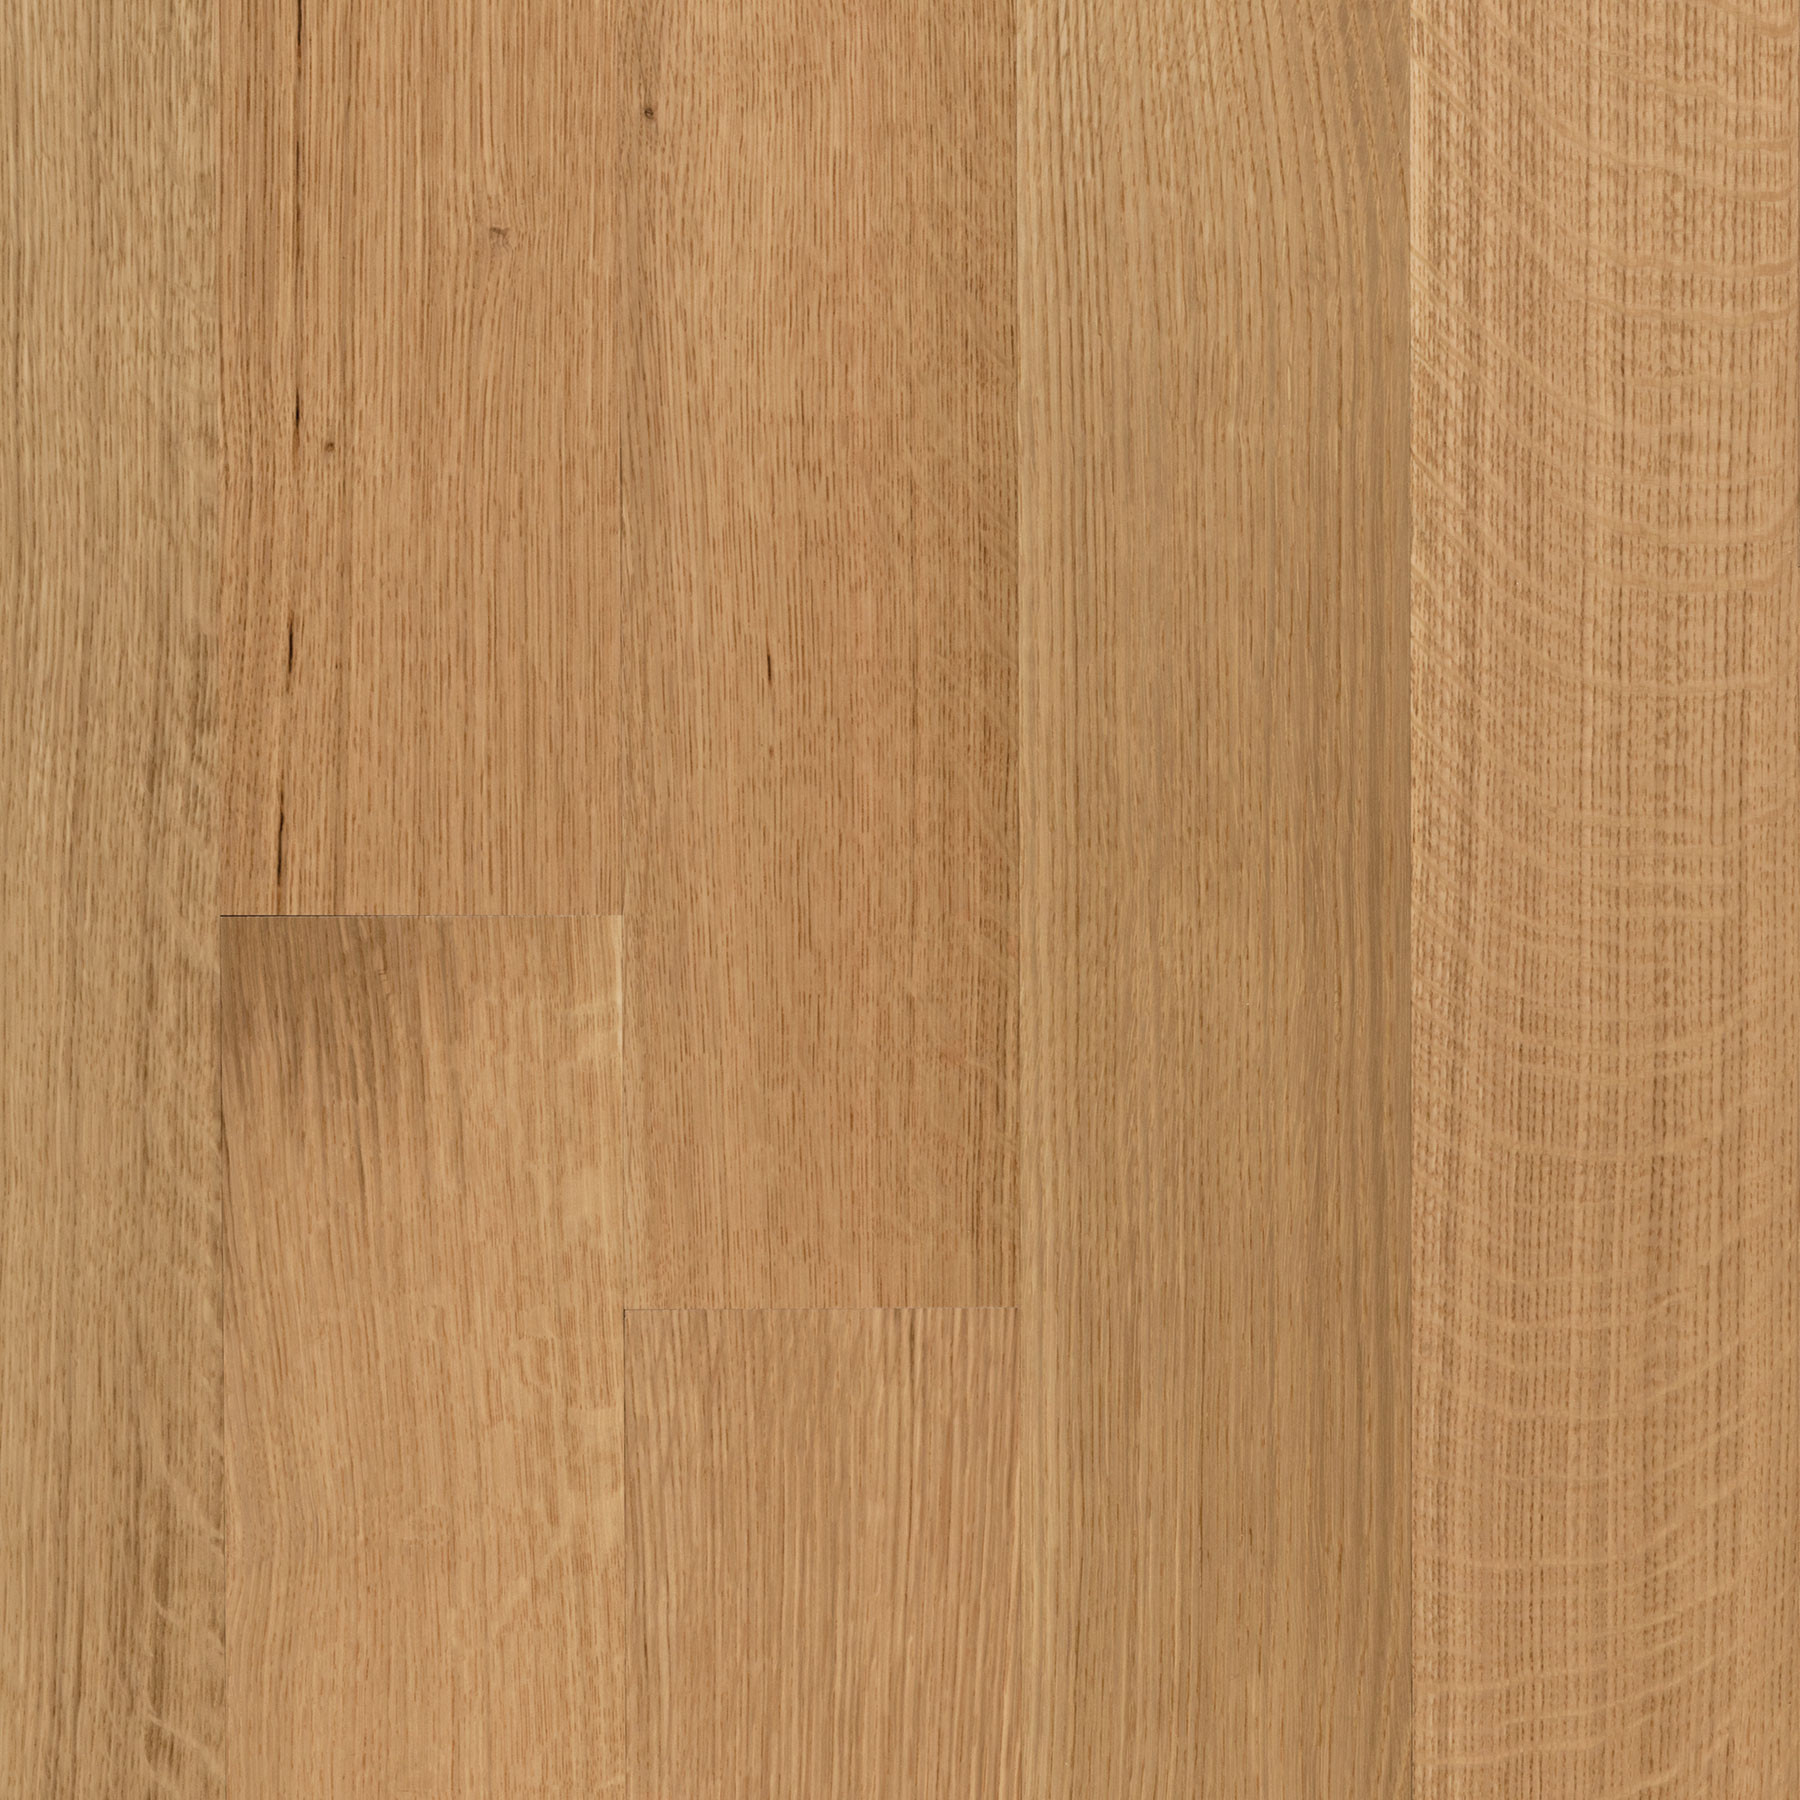 25 Stylish White Oak Hardwood Flooring Canada 2024 free download white oak hardwood flooring canada of american quartered white oak 5e280b3 etx surfaces throughout american quartered white oak 5e280b3